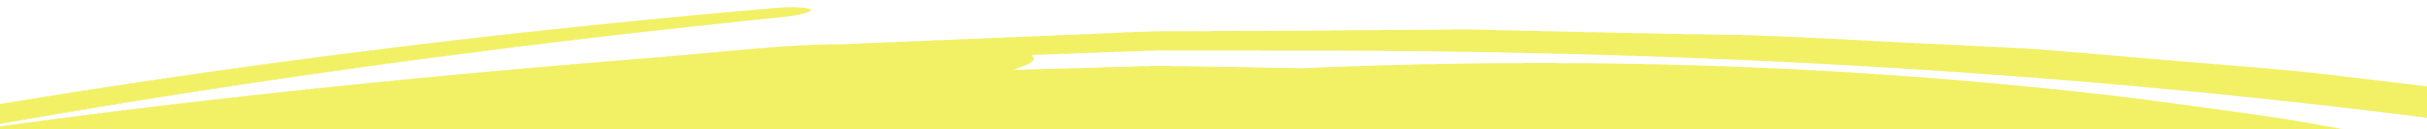 YellowGraphic Bottom